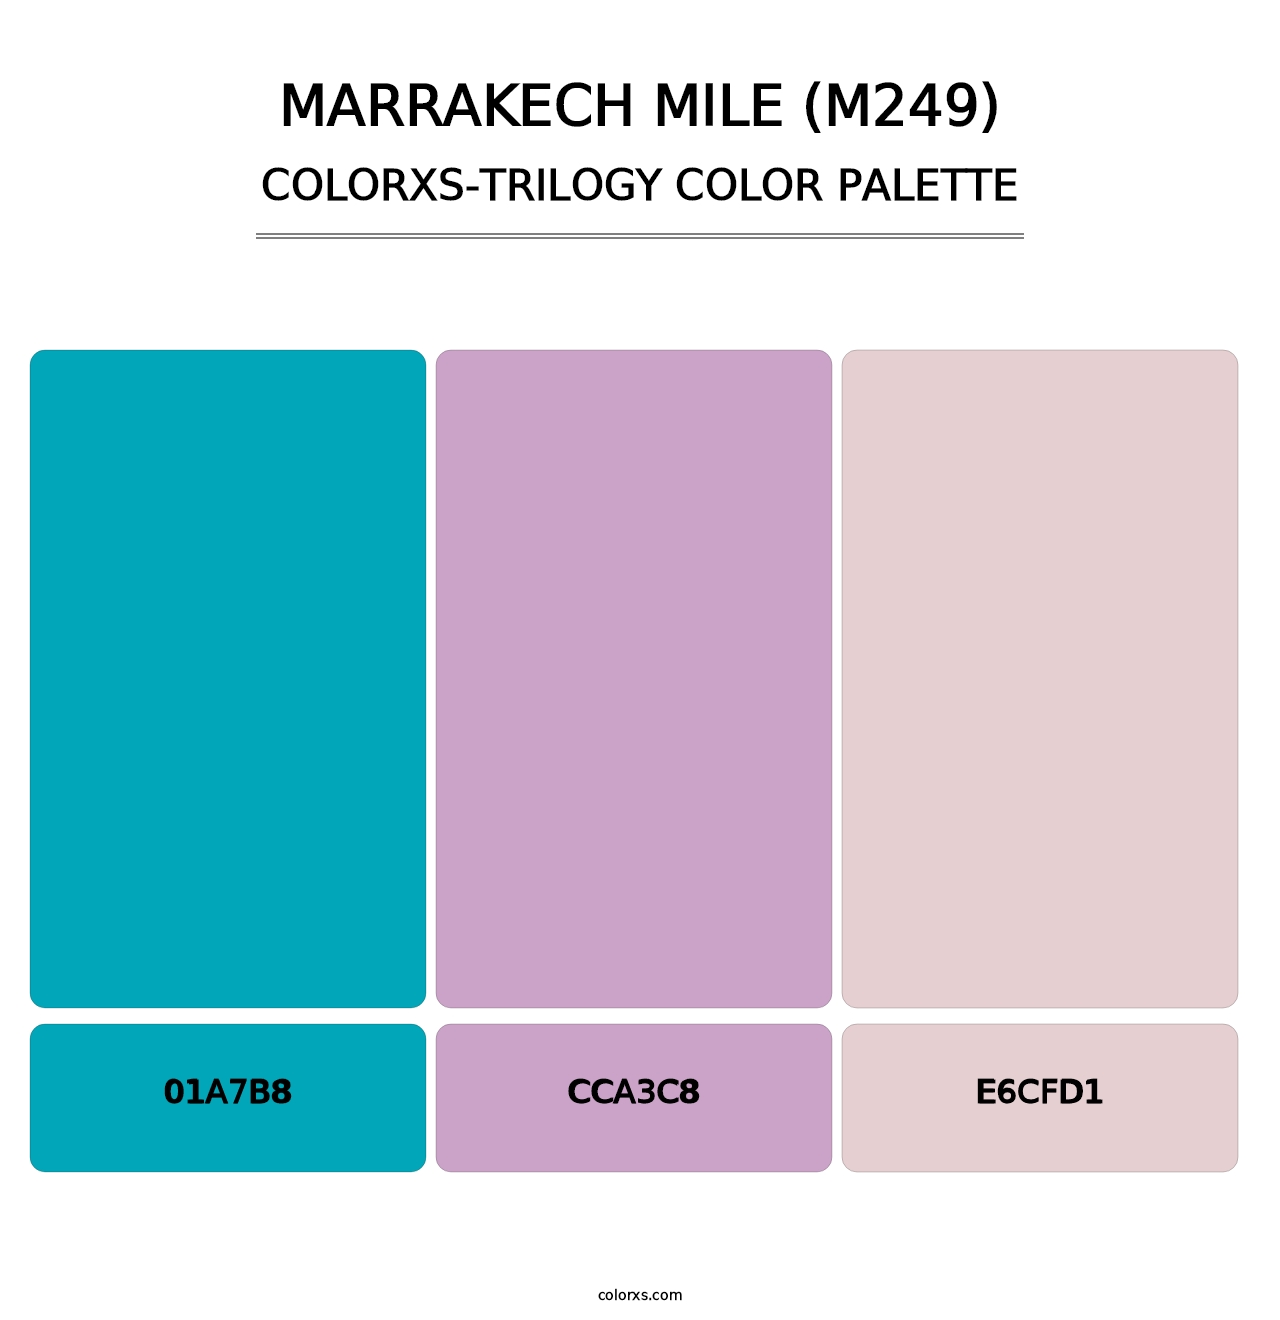 Marrakech Mile (M249) - Colorxs Trilogy Palette